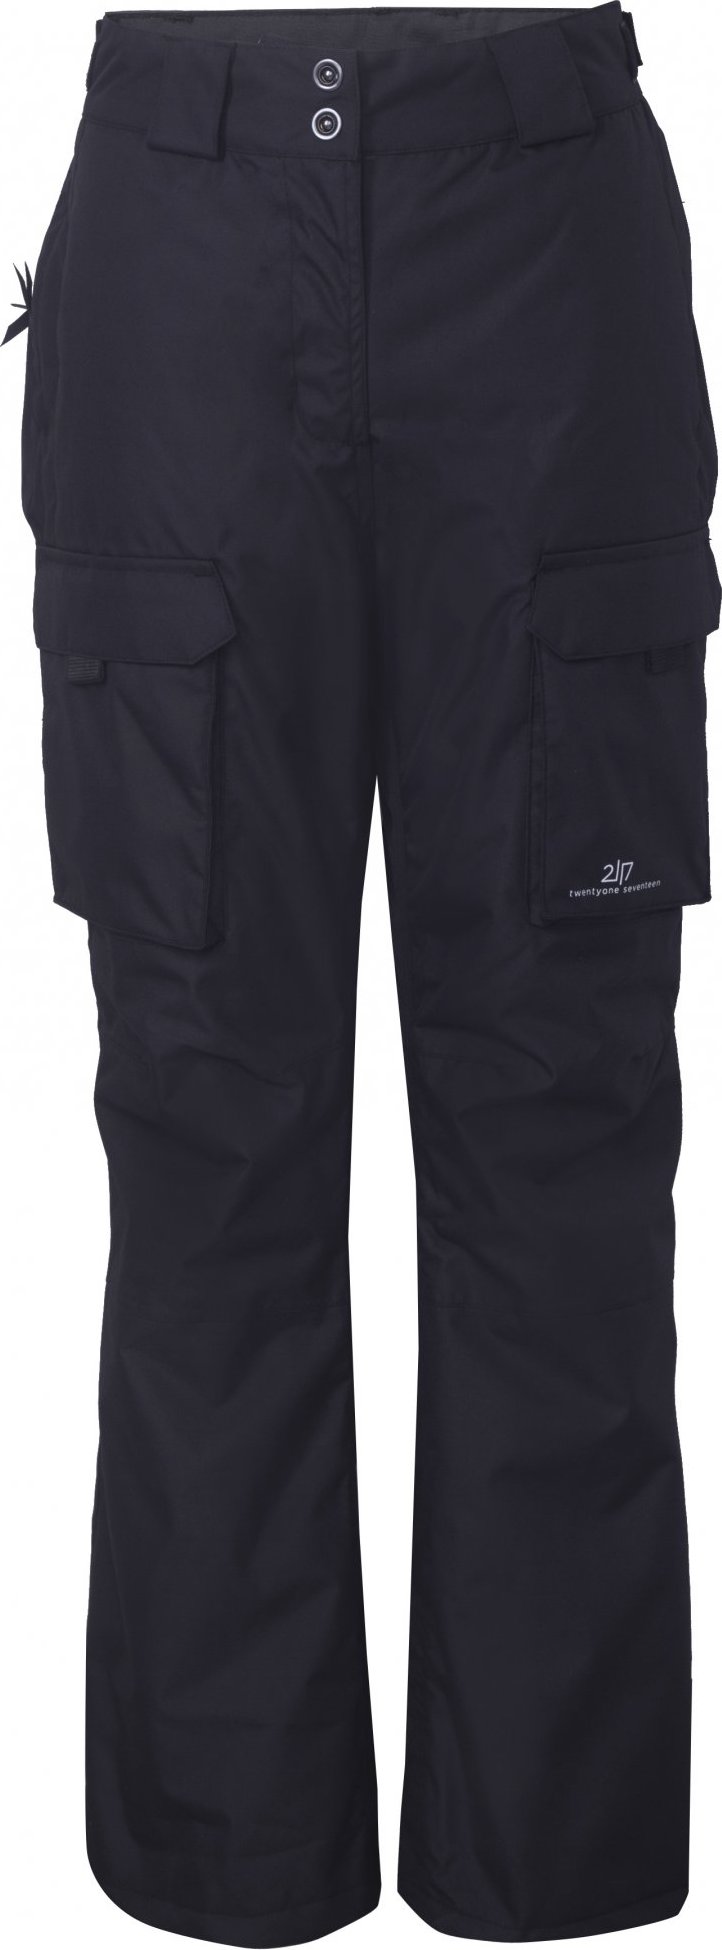 Dámské lyžařské kalhoty 2117 Tybble Eco černá Velikost: XL